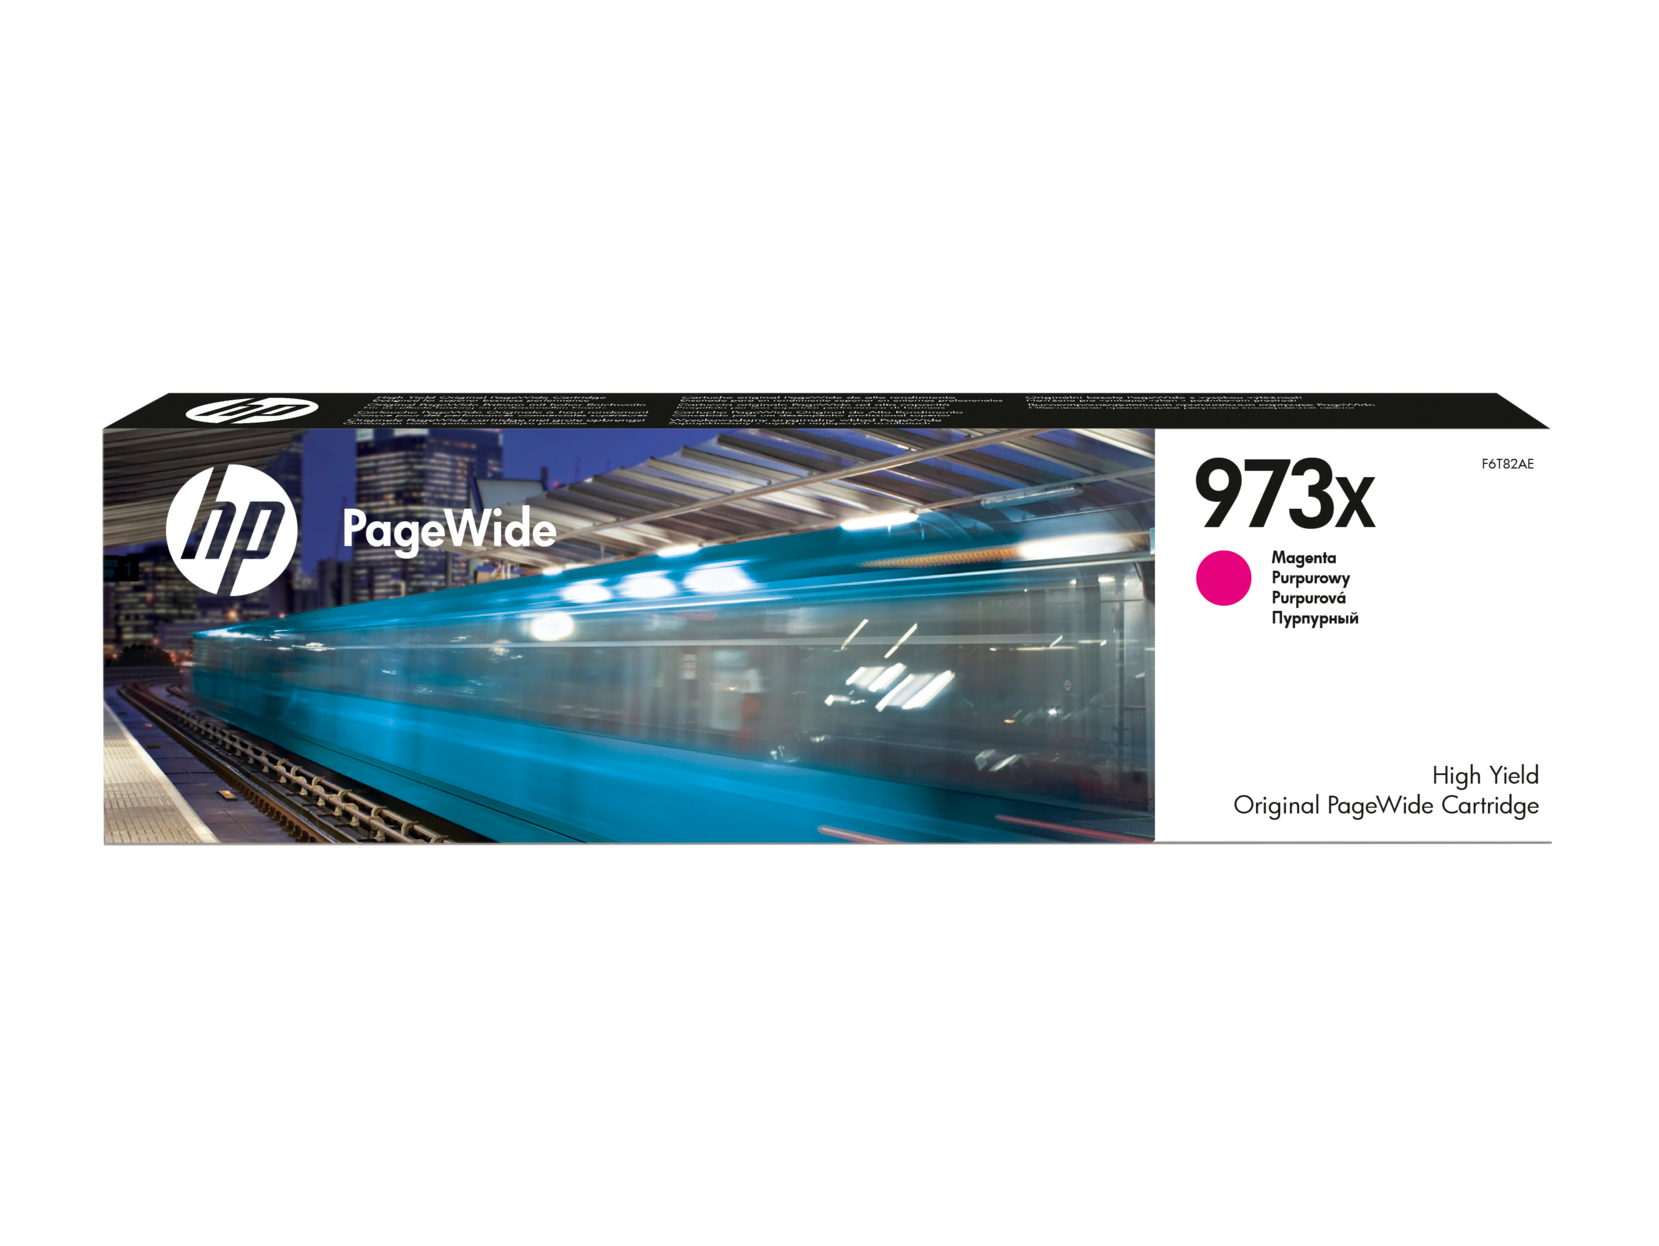 Картридж для печати HP Картридж HP 973X F6T82AE вид печати струйный, цвет Пурпурный, емкость 82мл.